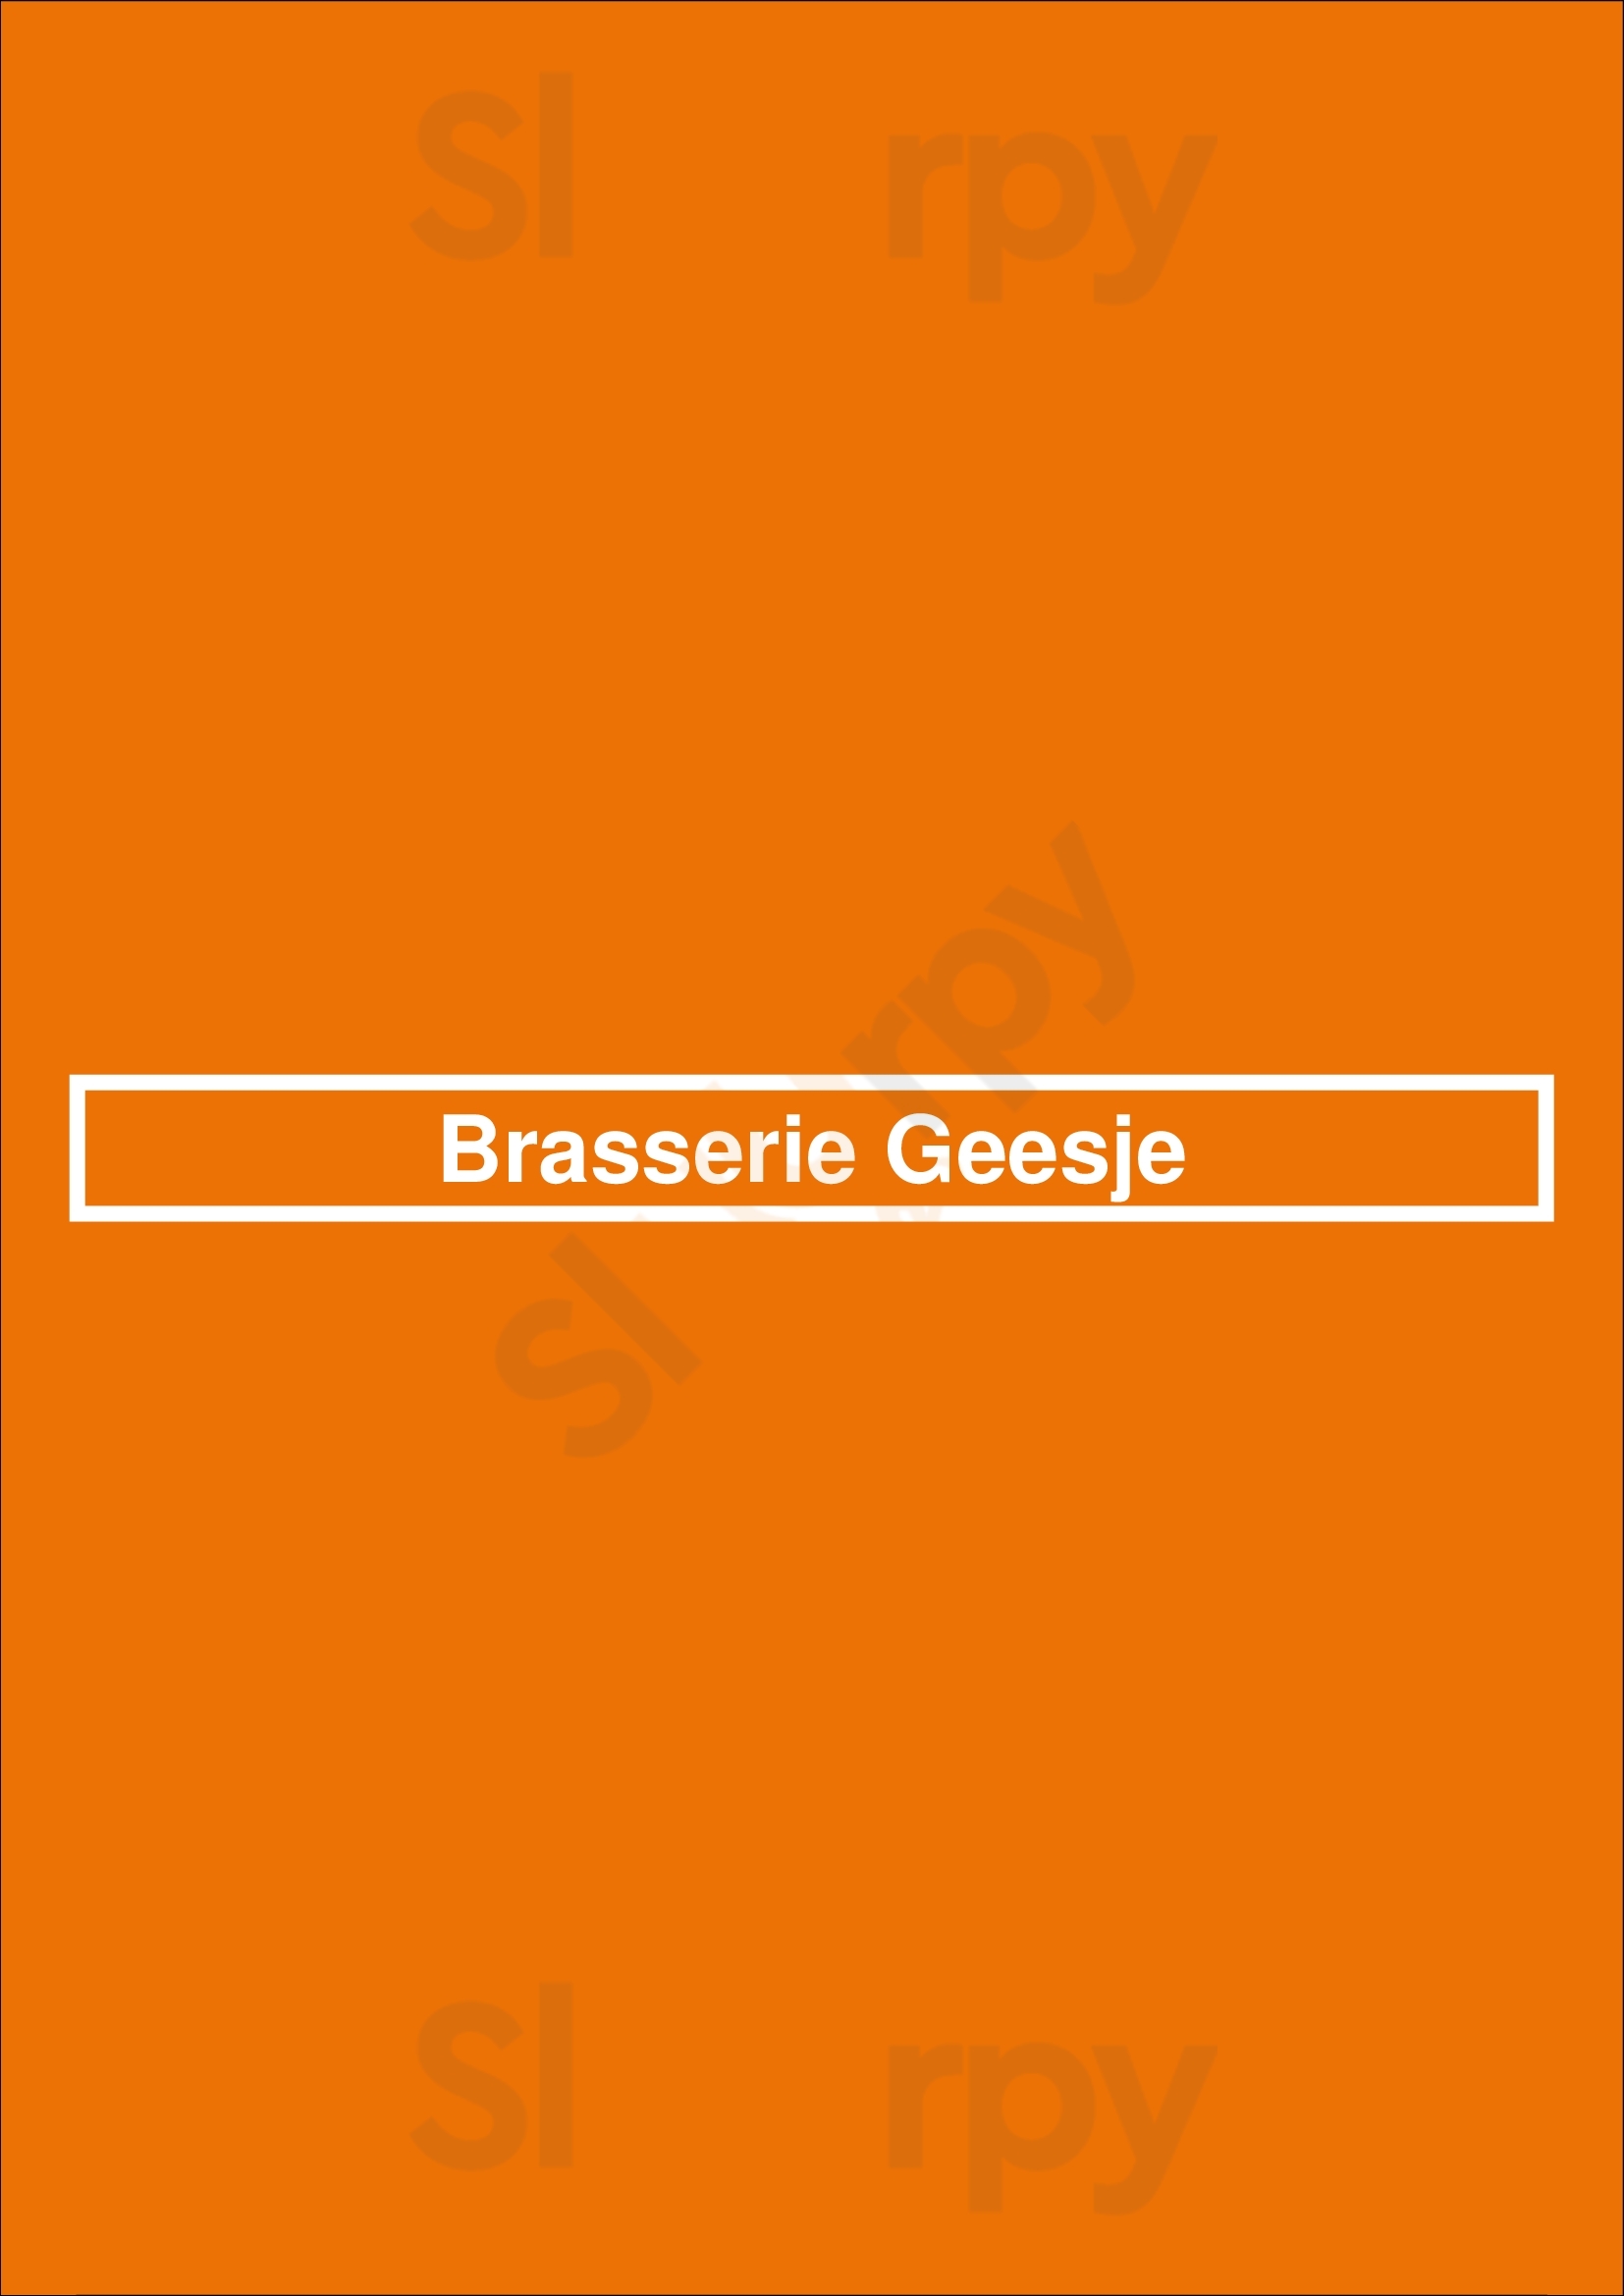 Brasserie Geesje Kortenhoef Menu - 1